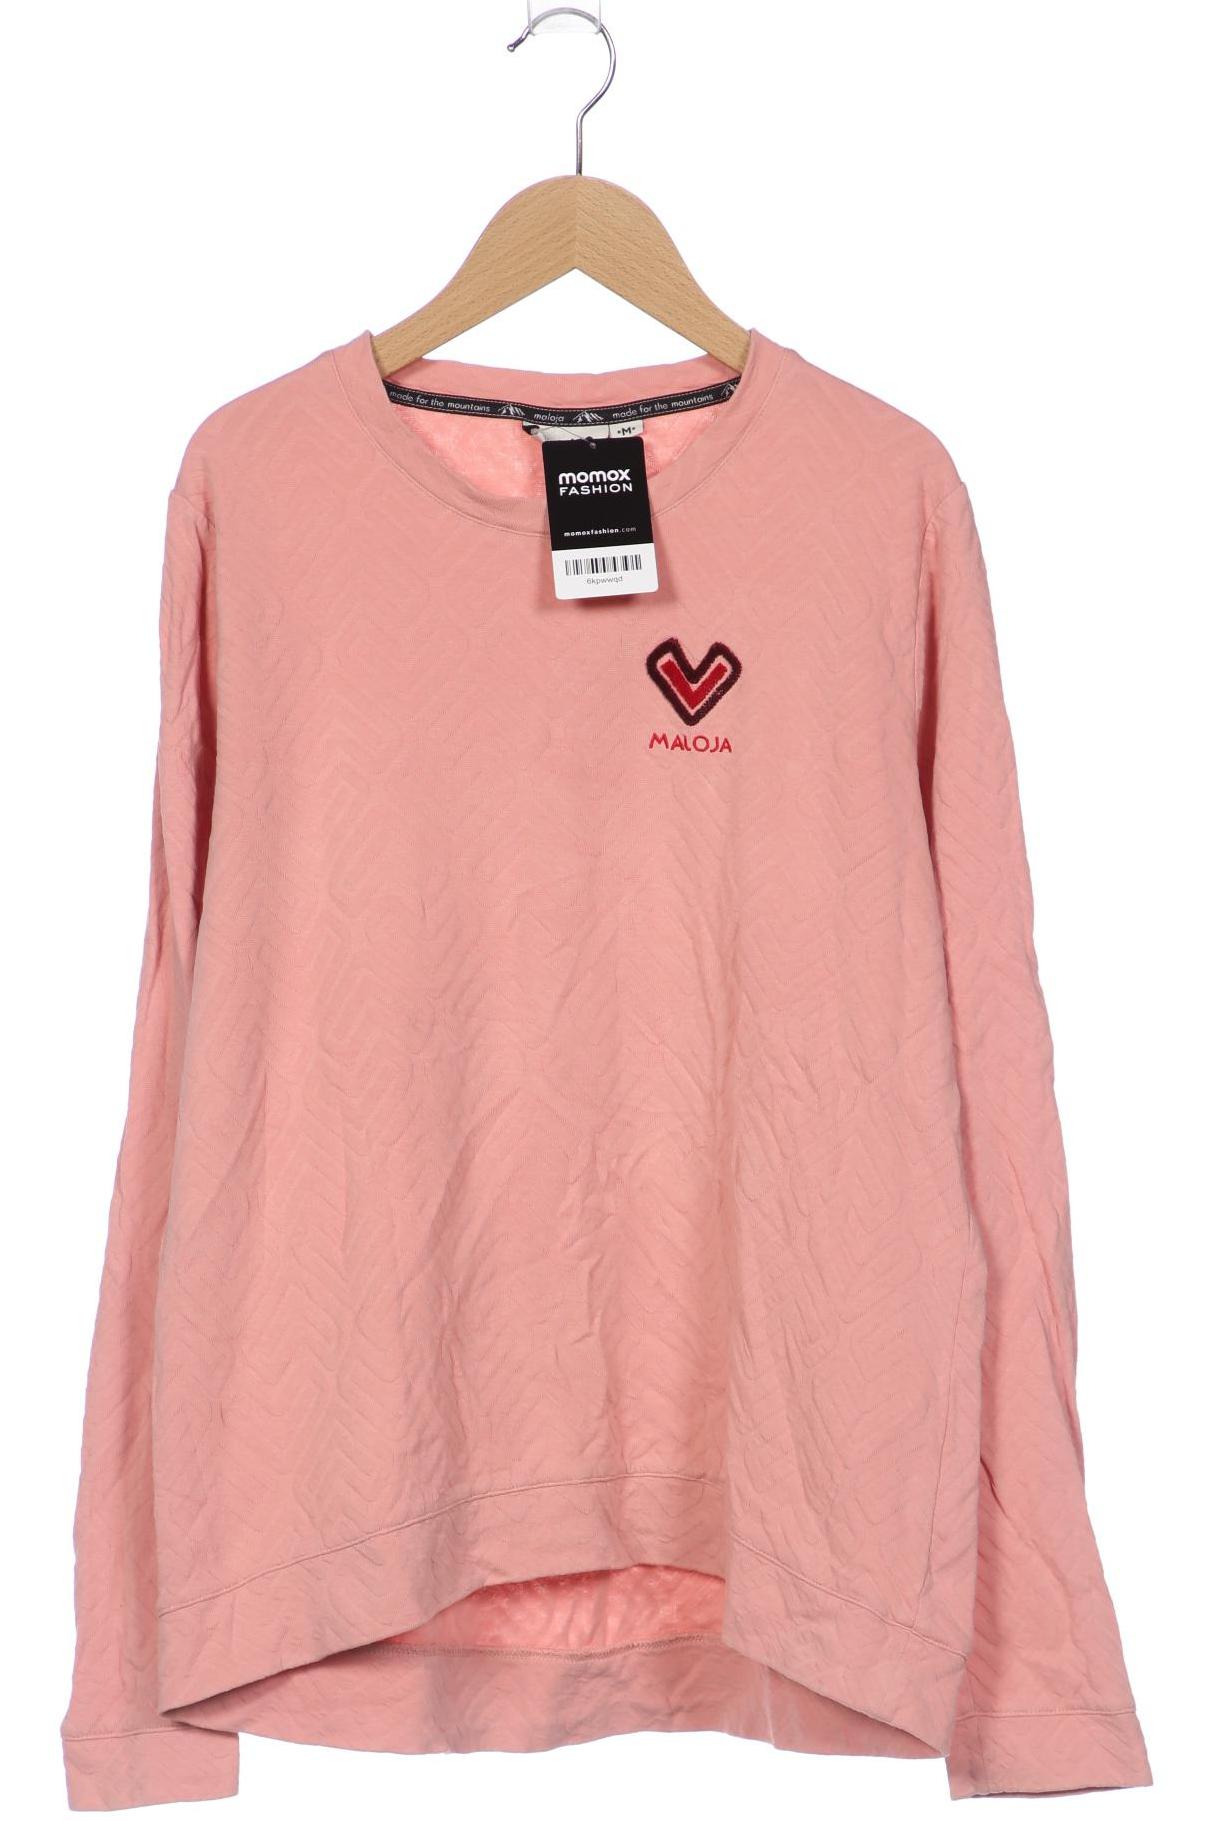 Maloja Damen Sweatshirt, pink, Gr. 38 von Maloja